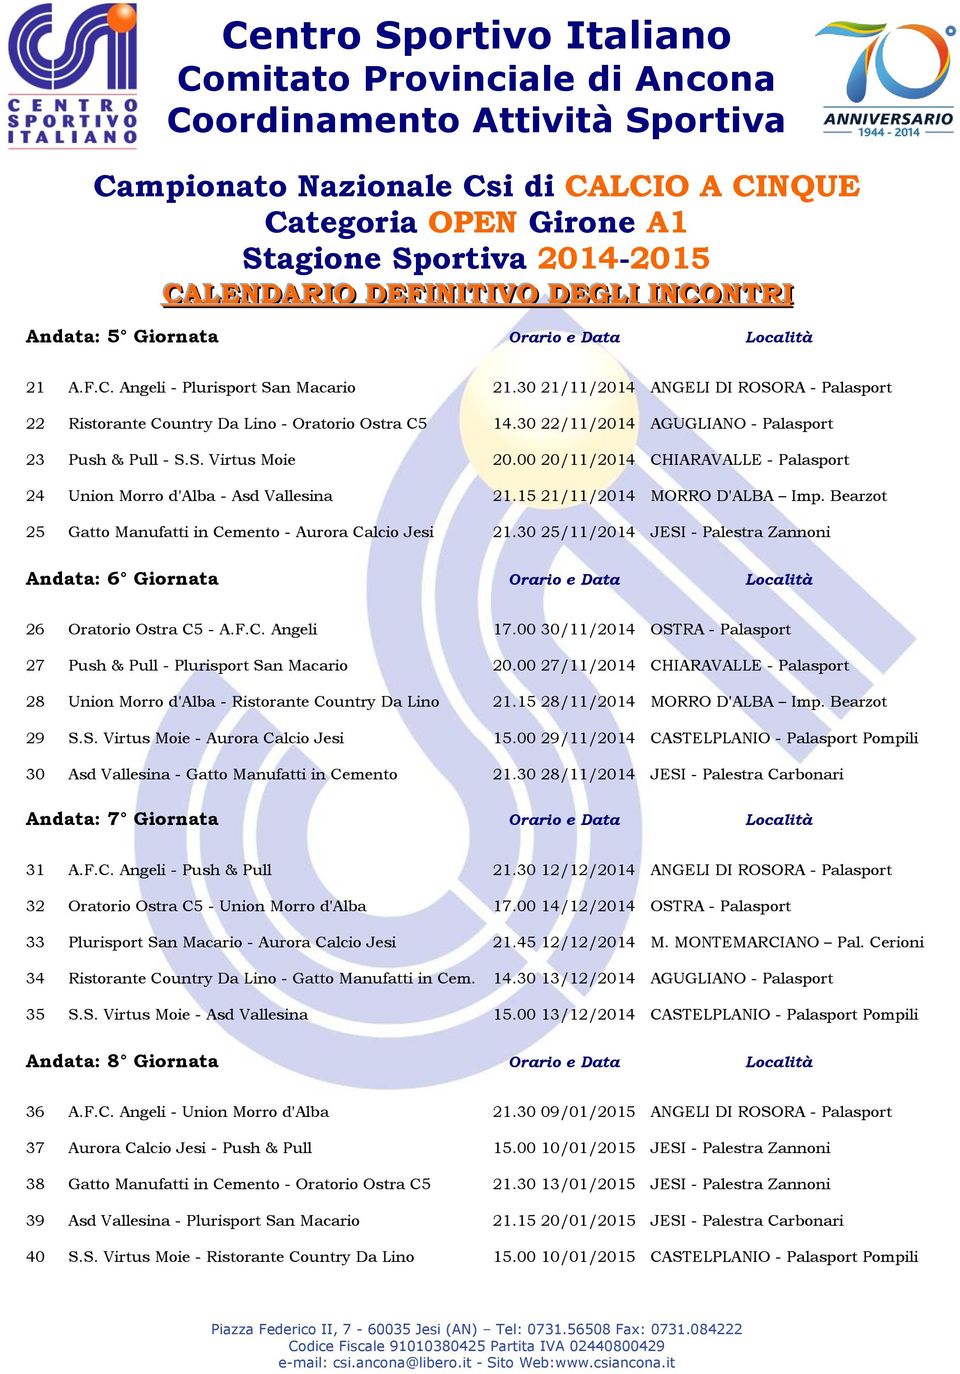 Bearzot 25 Gatto Manufatti in Cemento - Aurora Calcio Jesi 21.30 25/11/2014 JESI - Palestra Zannoni Andata: 6 Giornata Orario e Data Località 26 Oratorio Ostra C5 - A.F.C. Angeli 17.